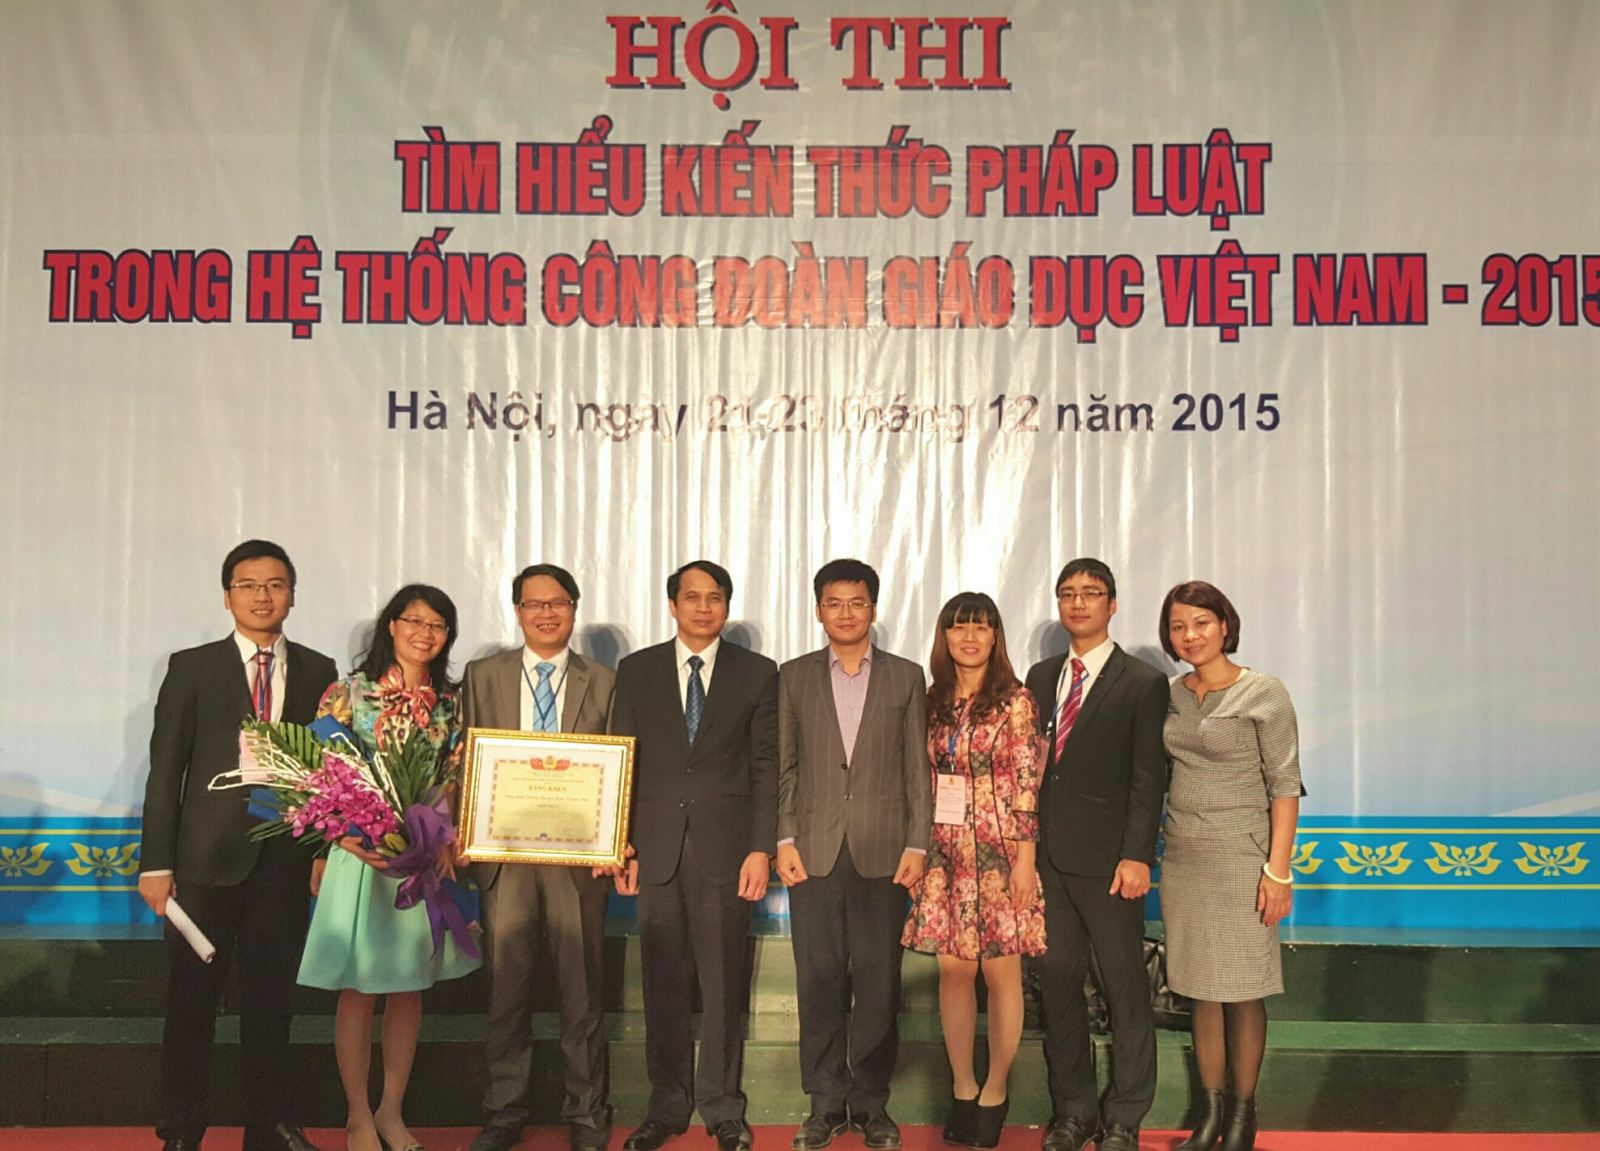 PGS.TS Phạm Mạnh Hùng – Thứ Trưởng Bộ GDĐT trao giải Nhất cho đội thi Trường ĐH Kinh tế Quốc dân 2